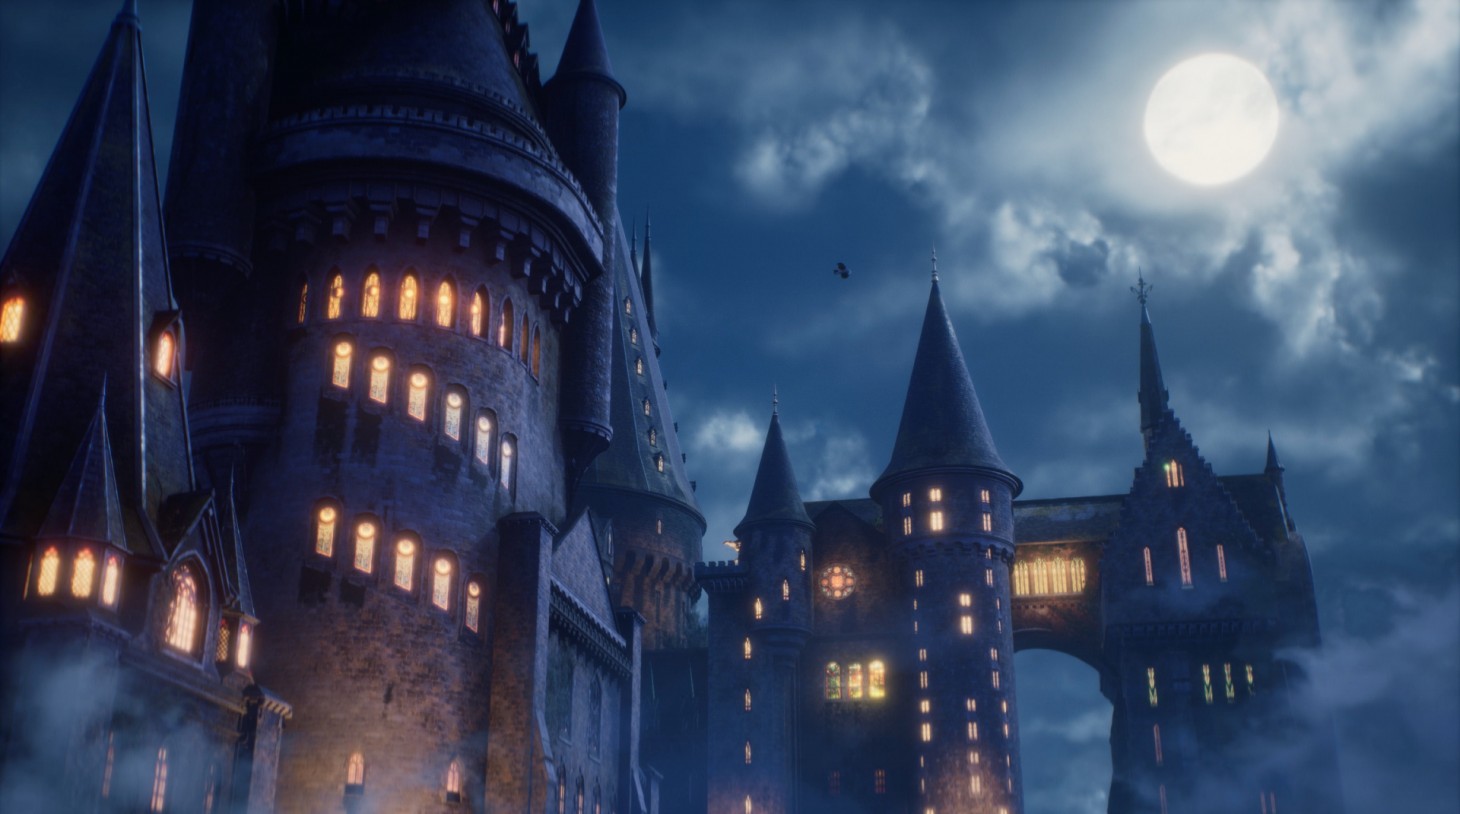 Hogwarts Legacy: Extended Gameplay Showcase